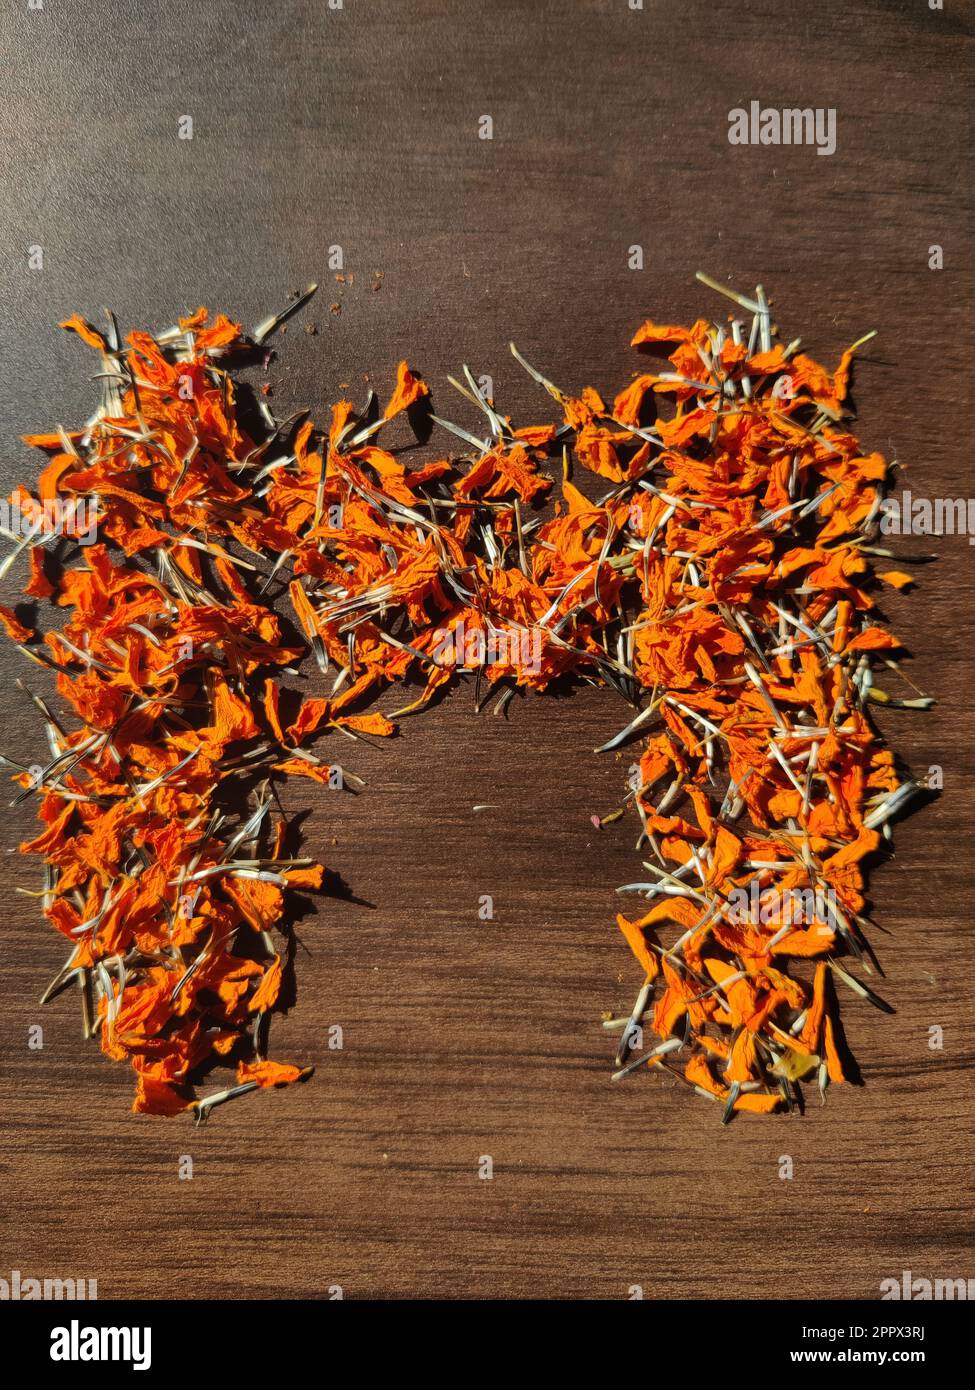 La lettre « M » est écrite avec des fleurs/graines de Marigold séchées sur une table en bois Banque D'Images